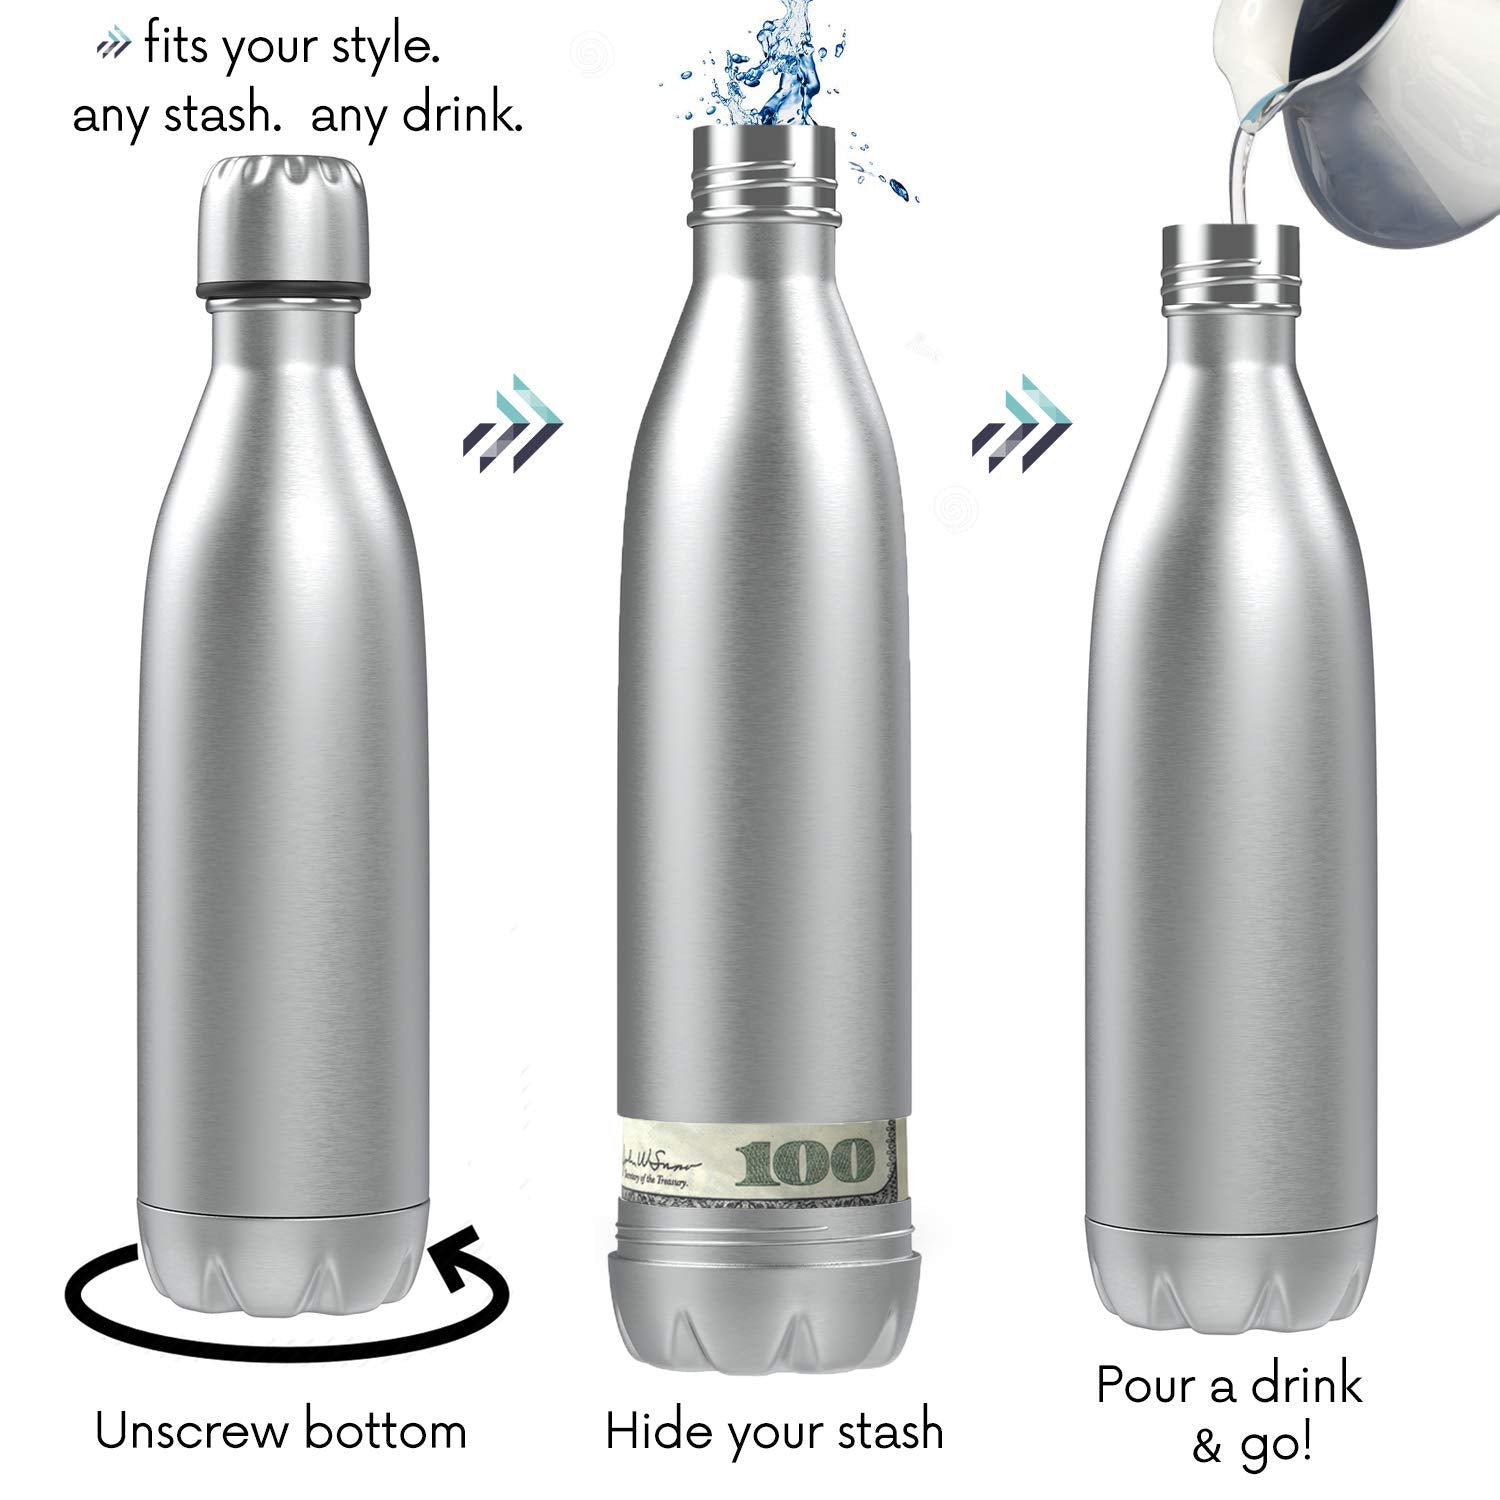 Hidden Dangers of Hot Water Bottles - Burnshield